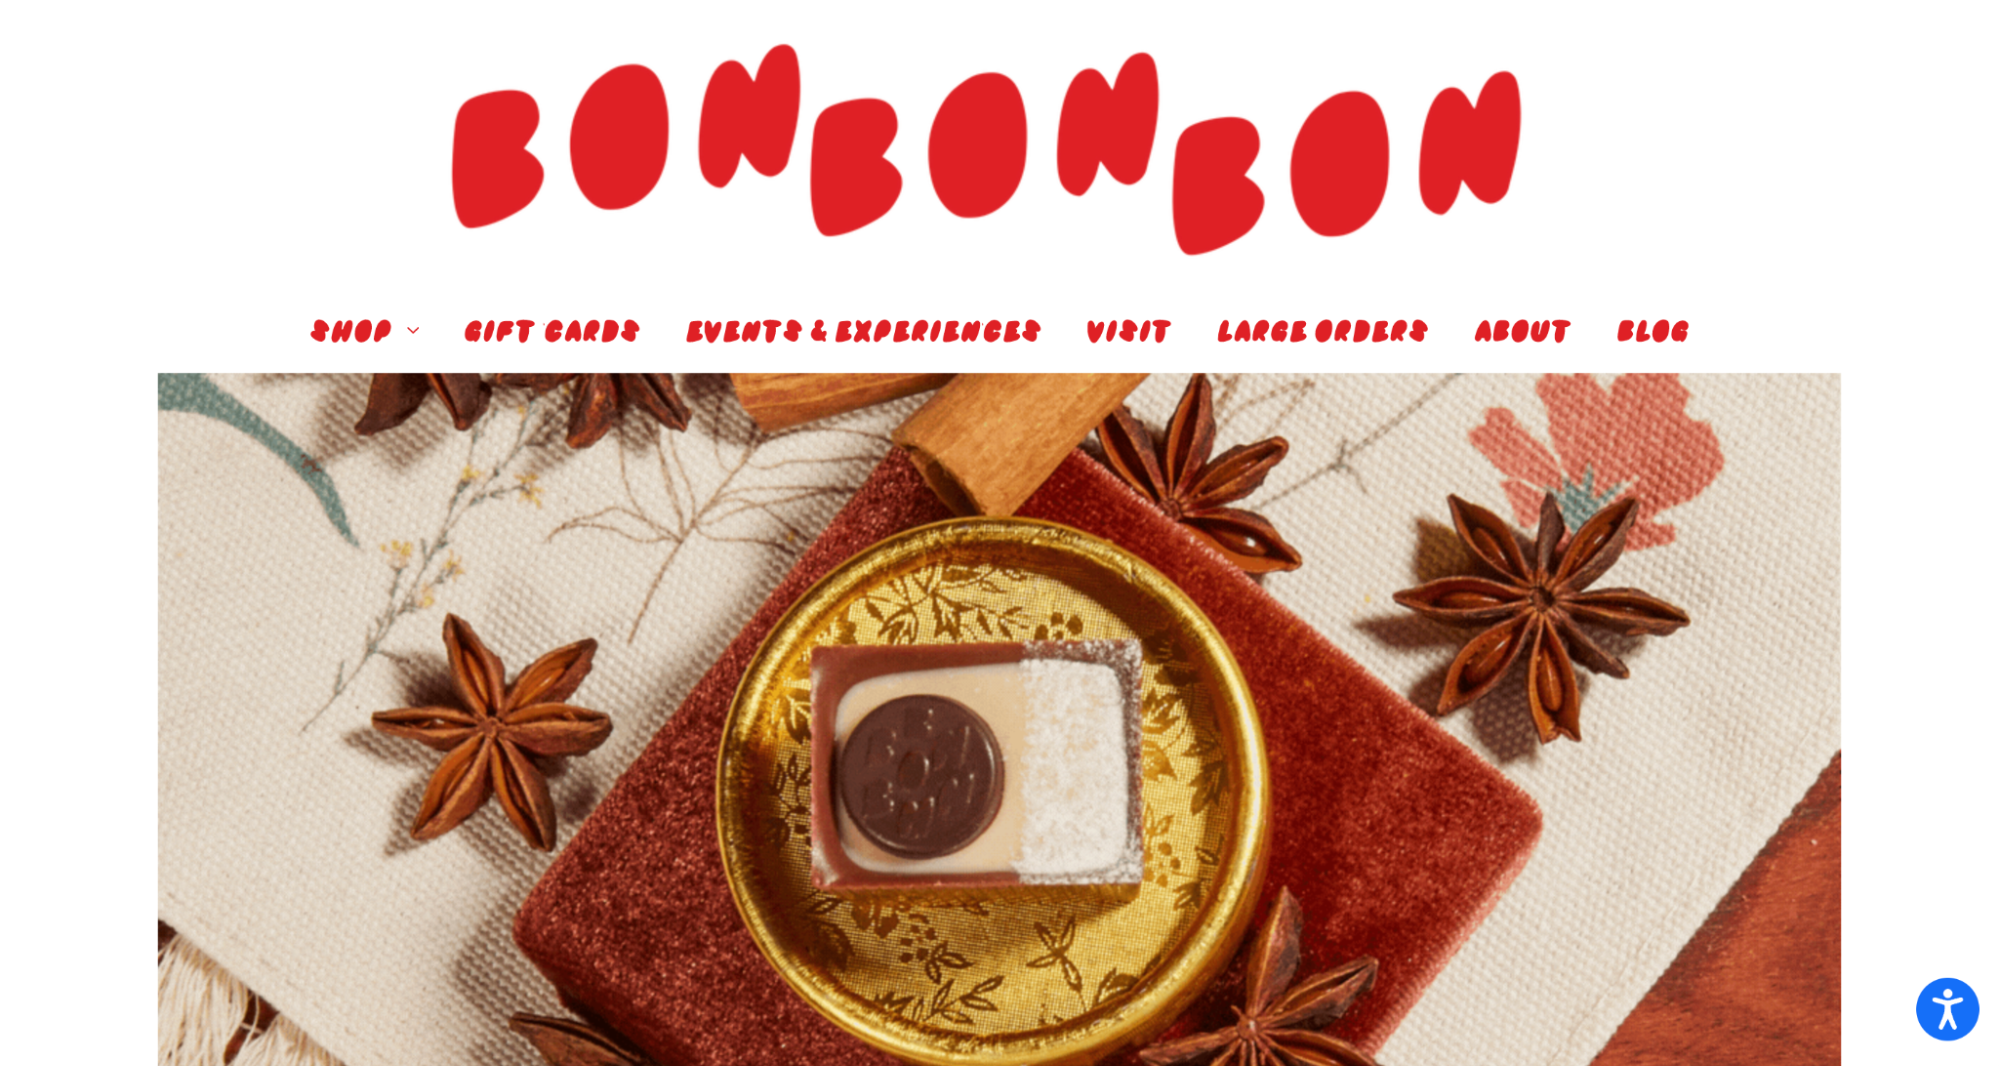 Bon Bon Bon BigCommerce site design bigcommerce site designs